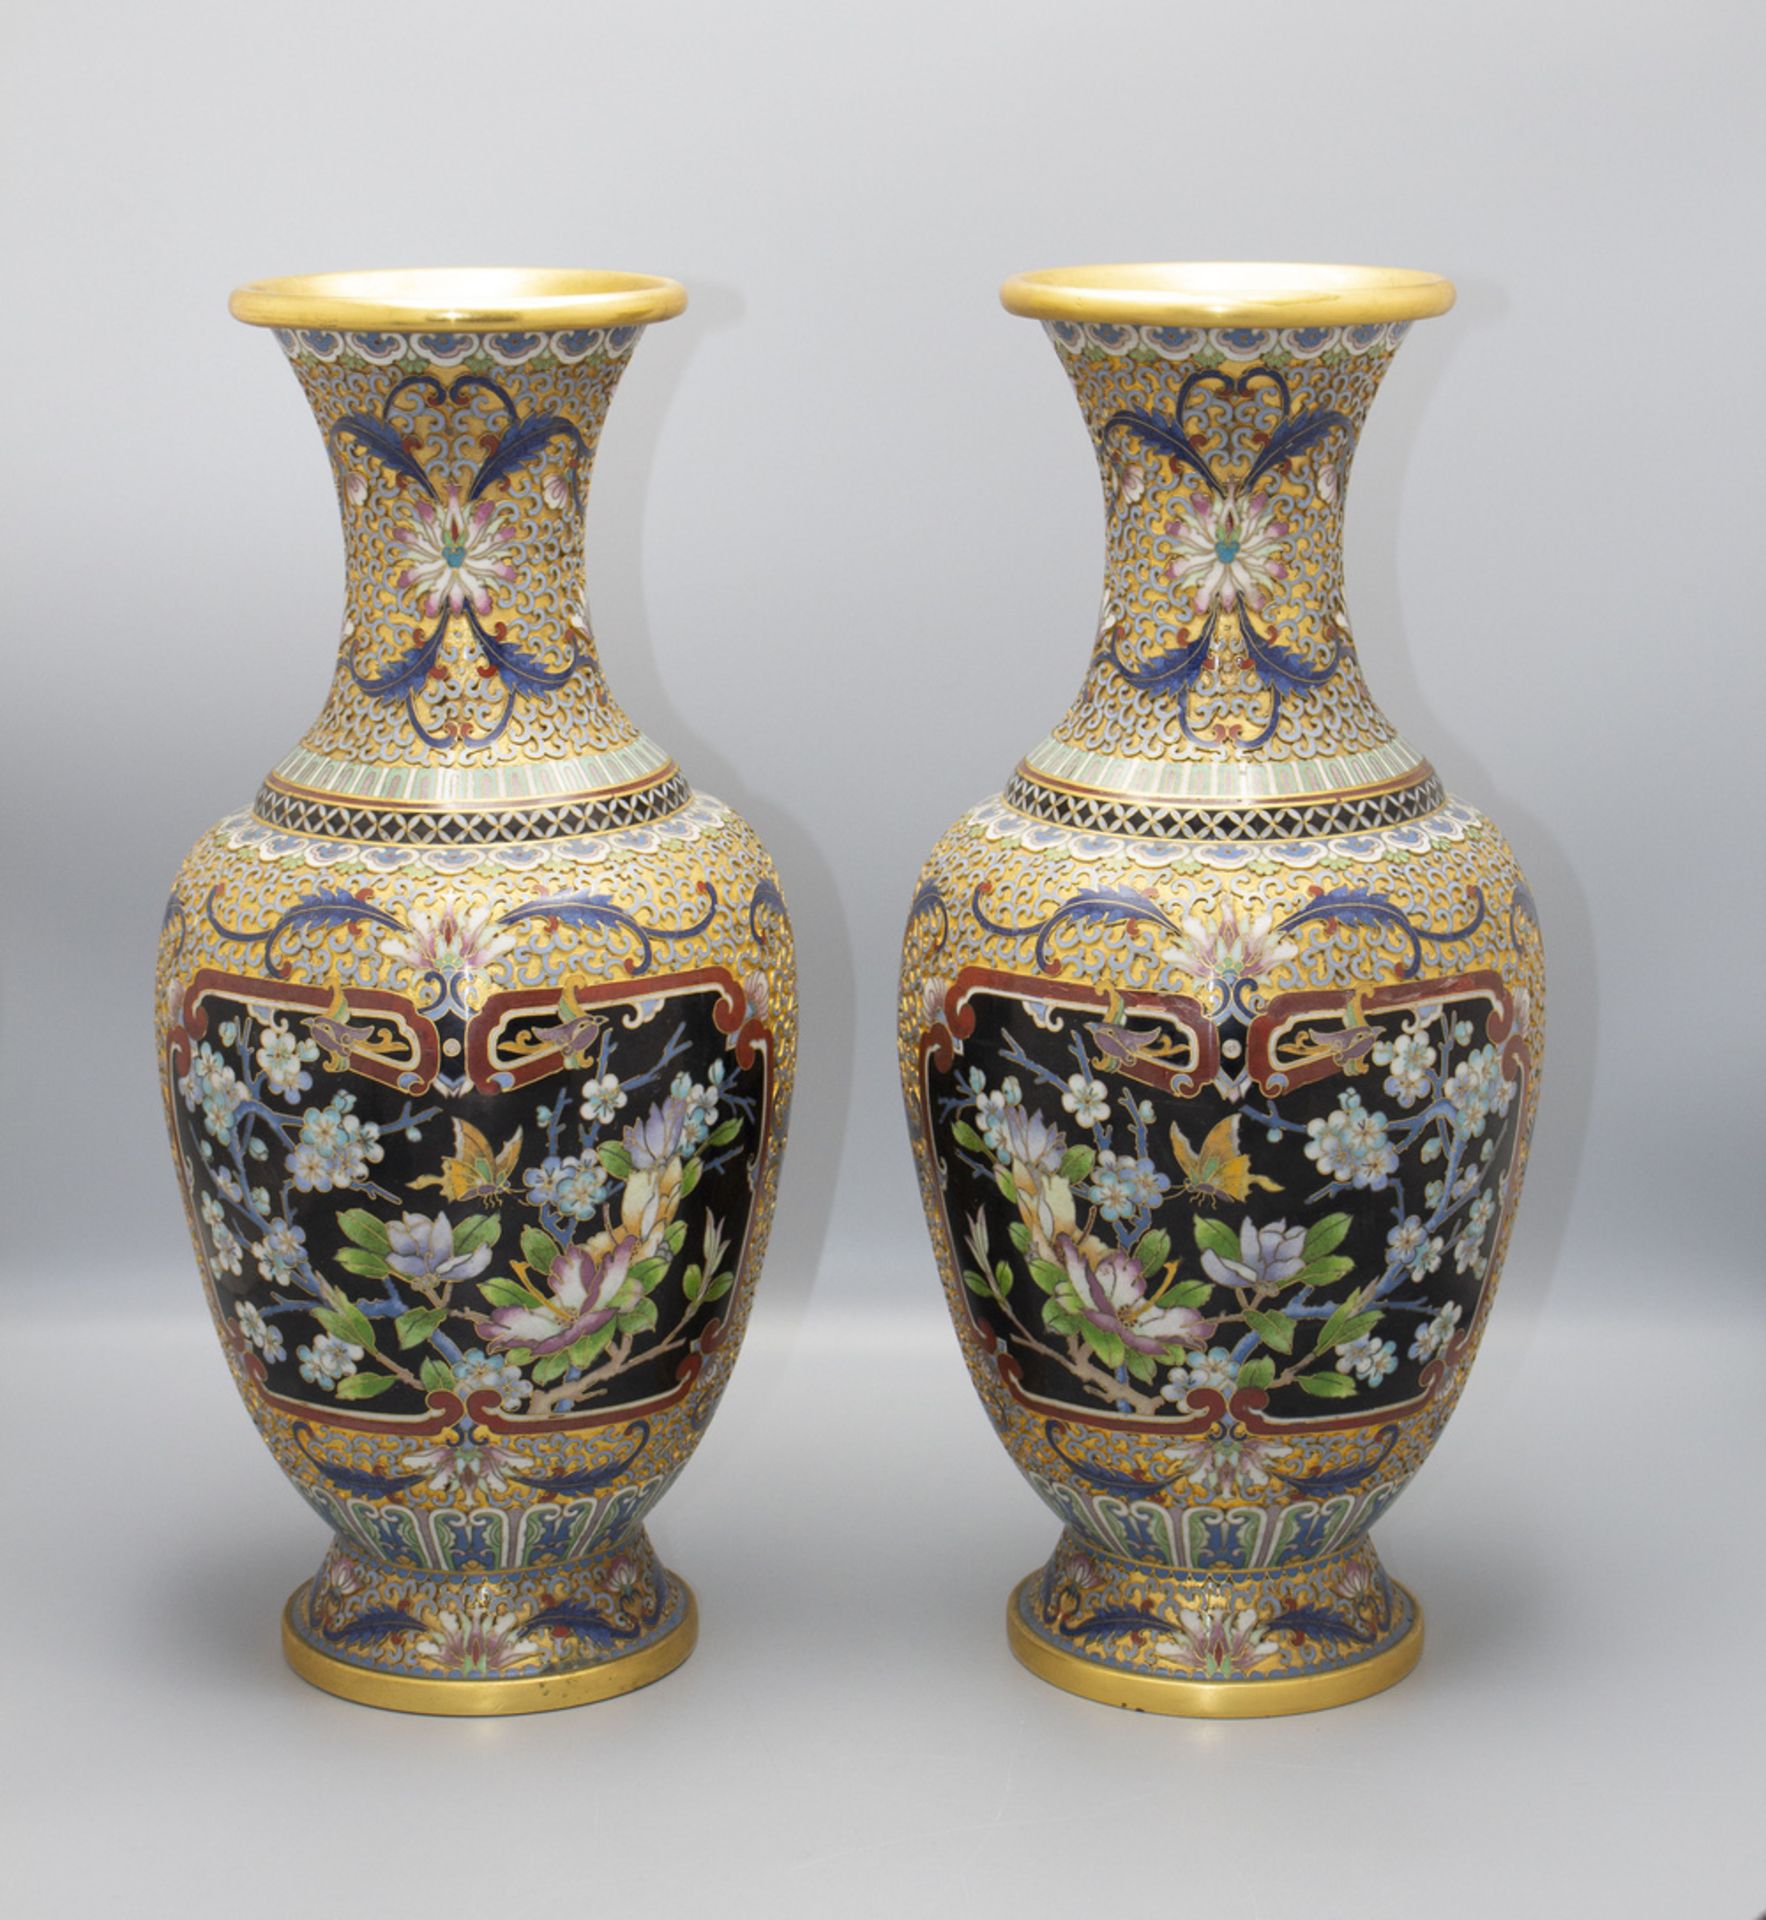 Paar Cloisonne-Vasen / A pair of Cloisonné vases, China, um 1900